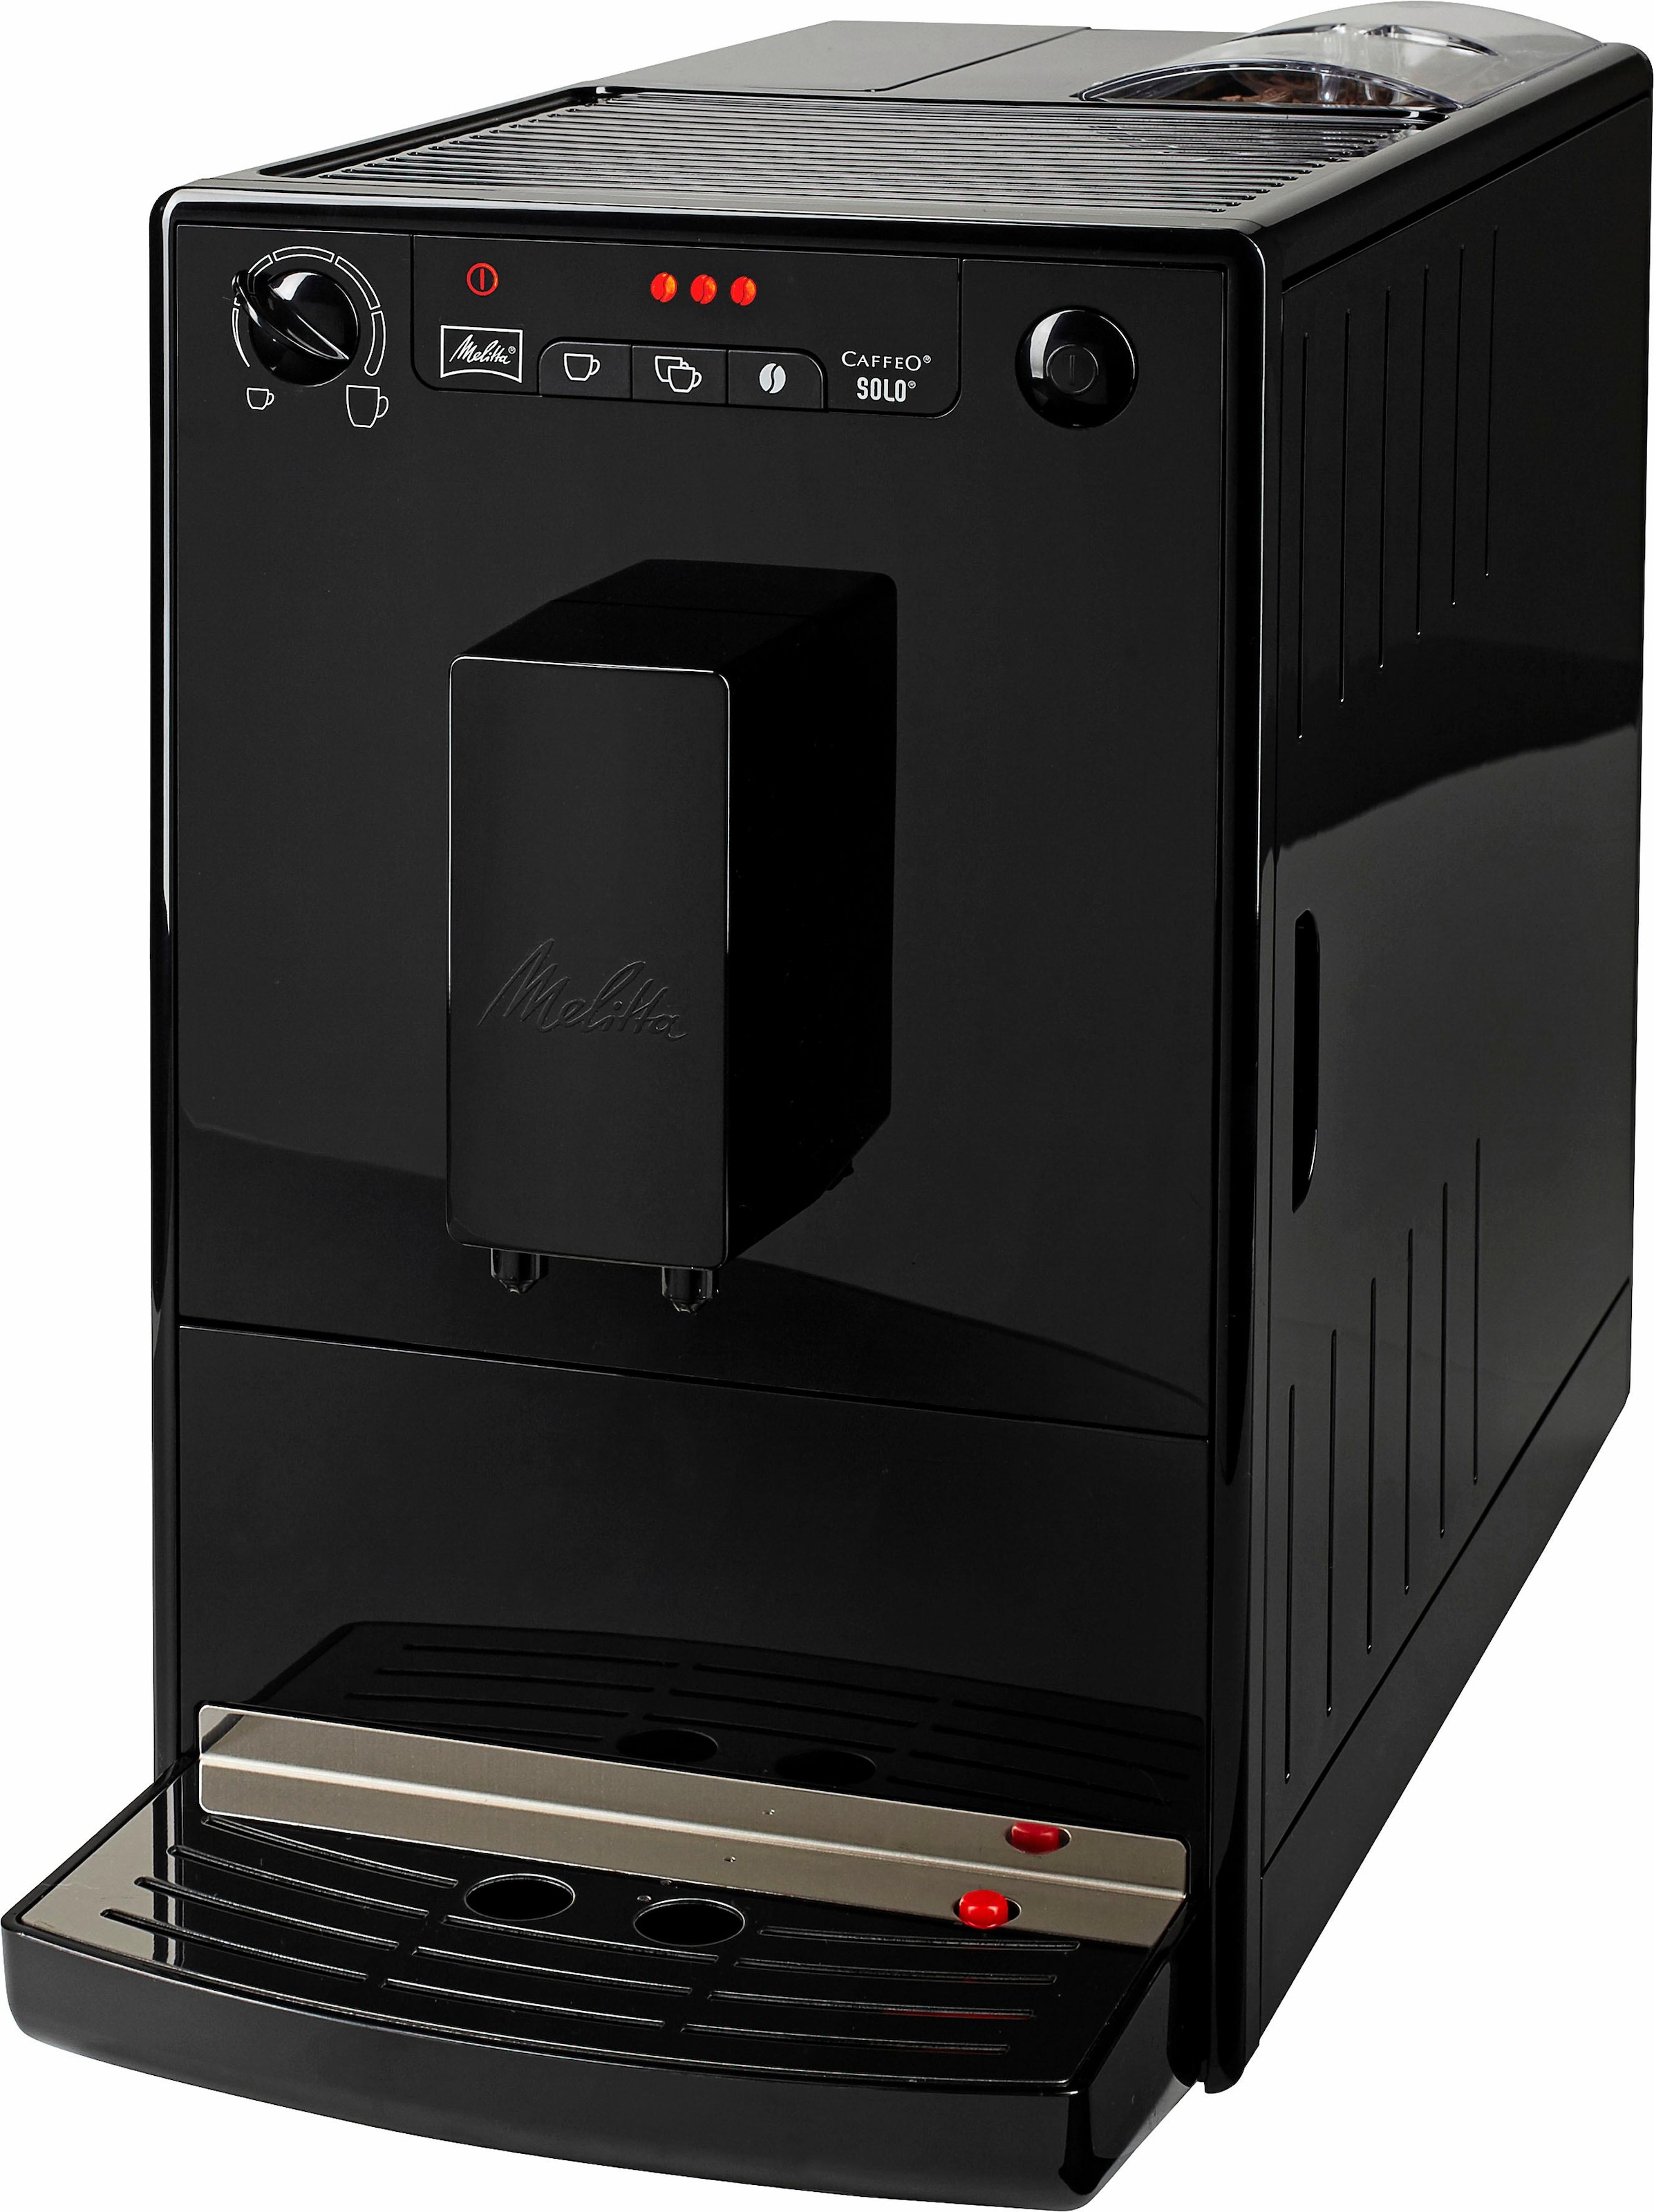 Melitta Kaffeevollautomat »Solo® E950-322, pure black«, aromatischer Kaffee  & Espresso bei nur 20 cm Breite jetzt kaufen bei OTTO